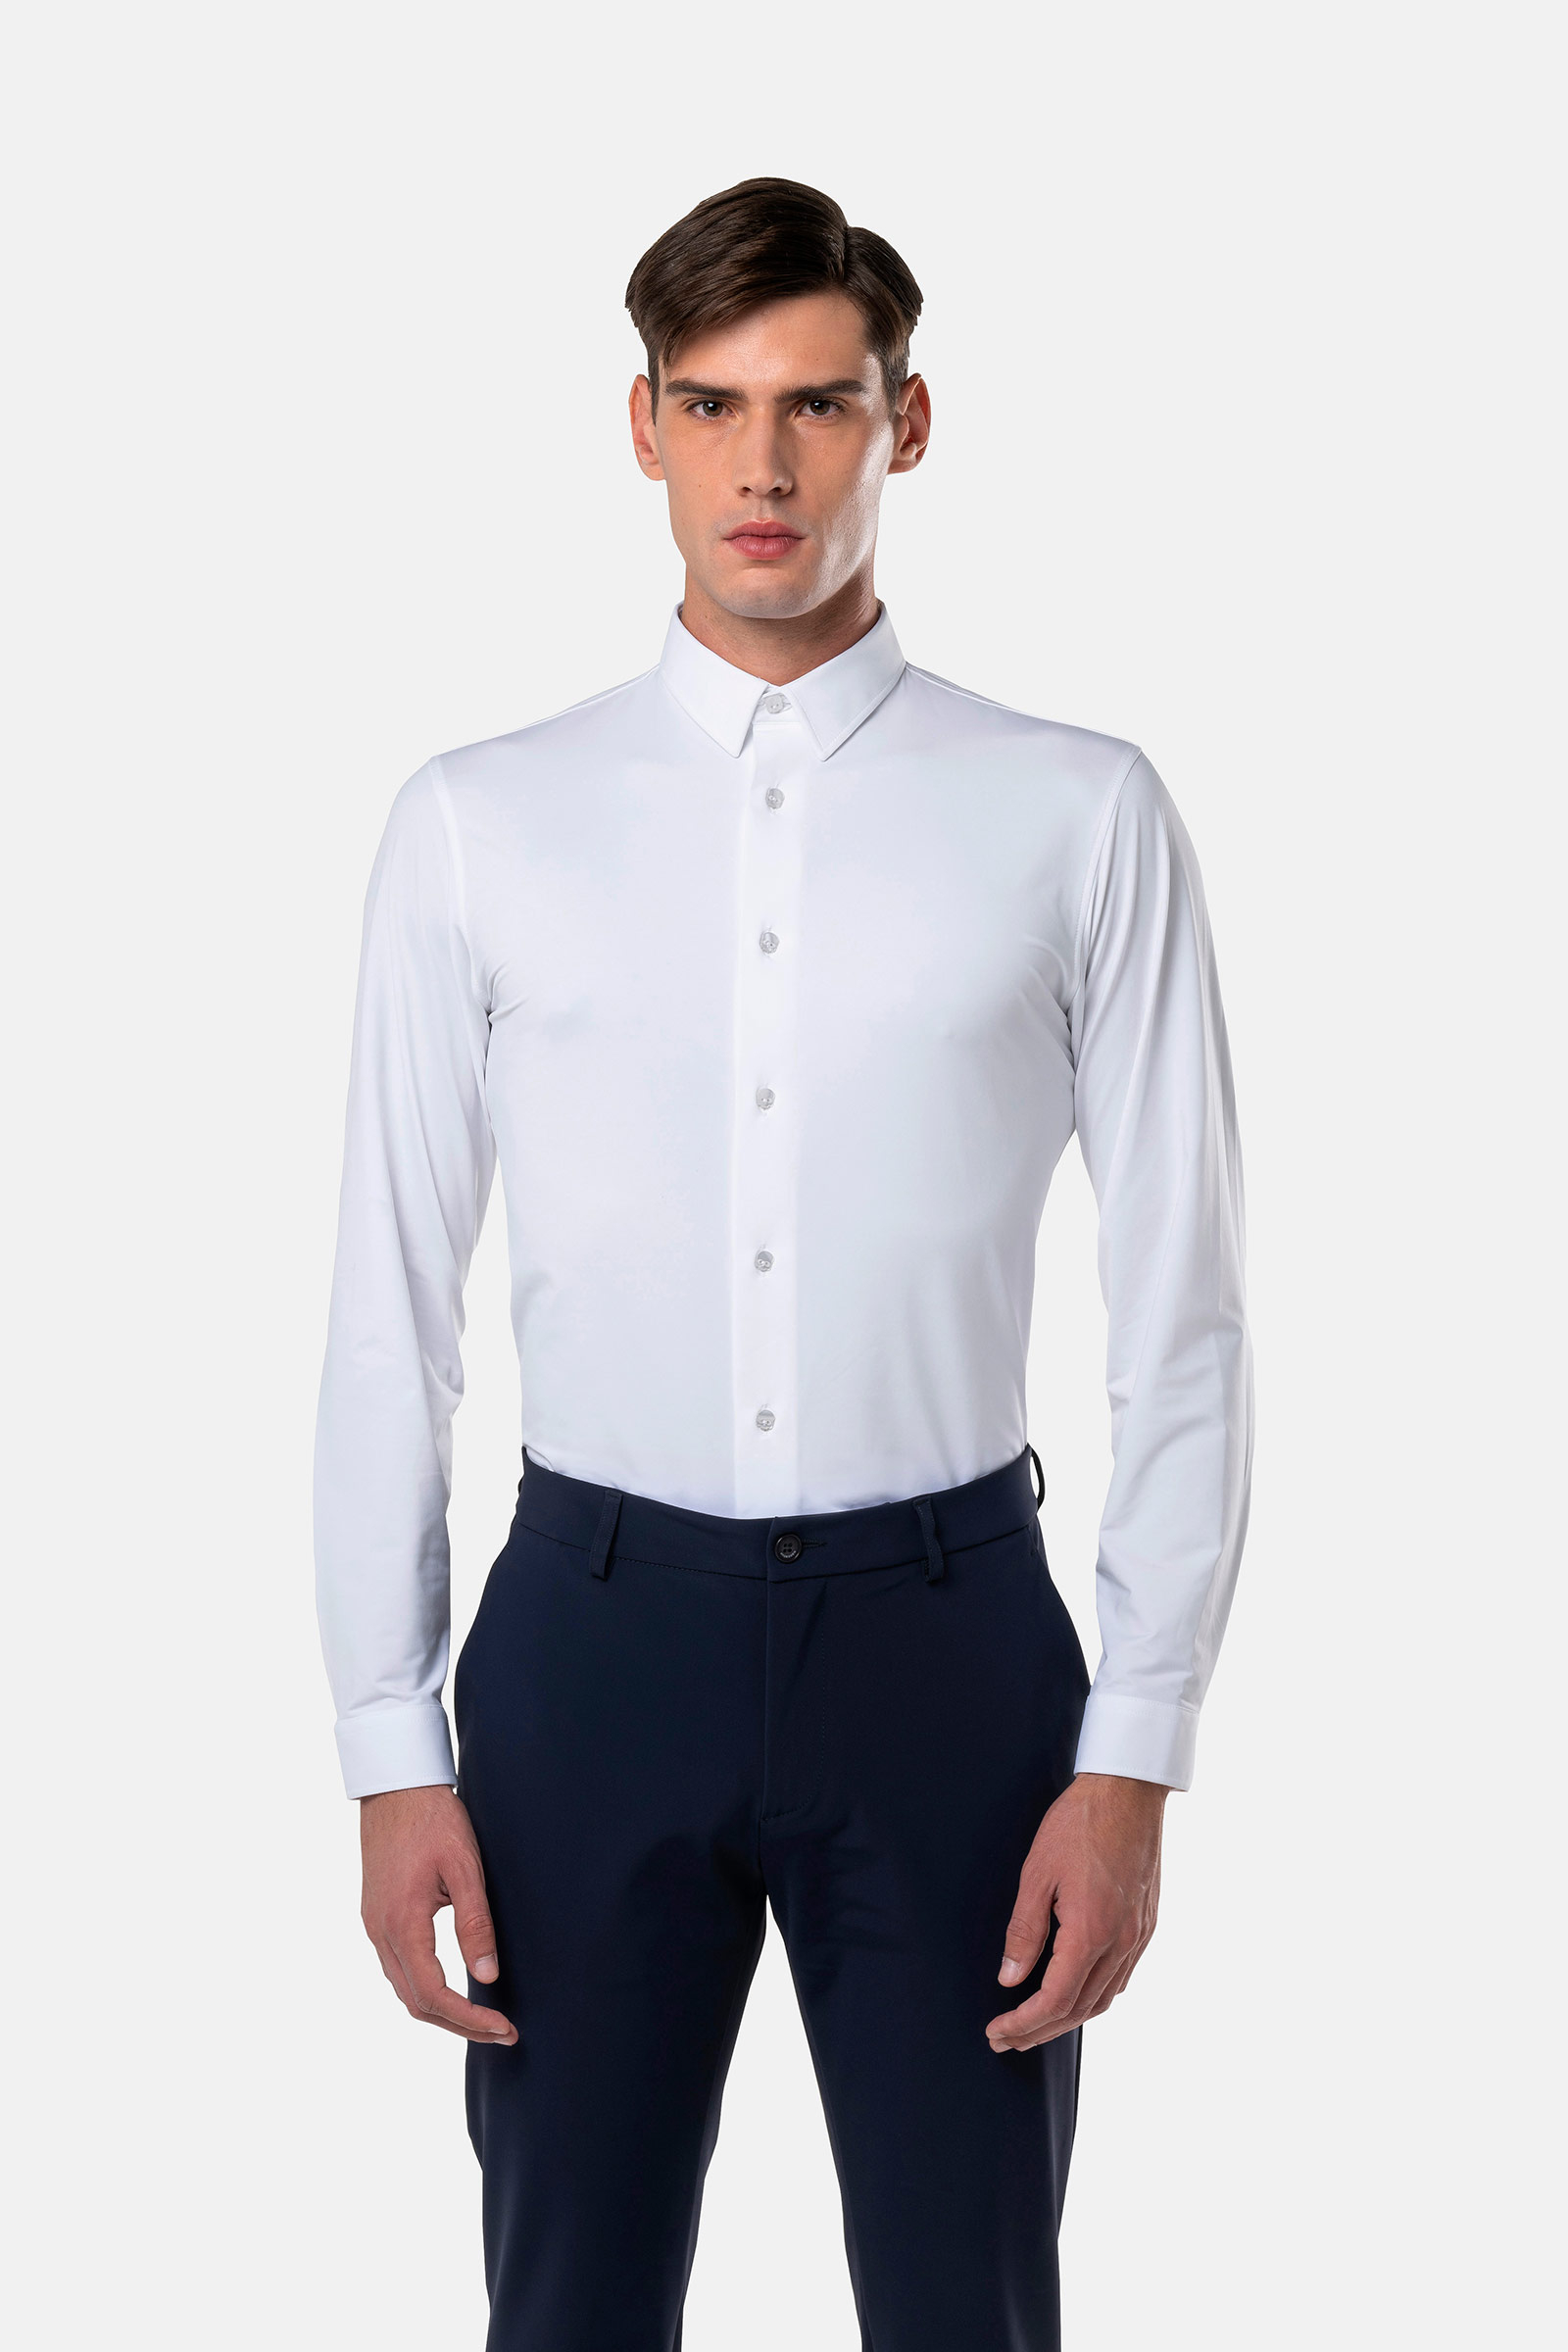 TECH SHIRT - WHITE OXFORD - Hydrogen - Luxury Sportwear